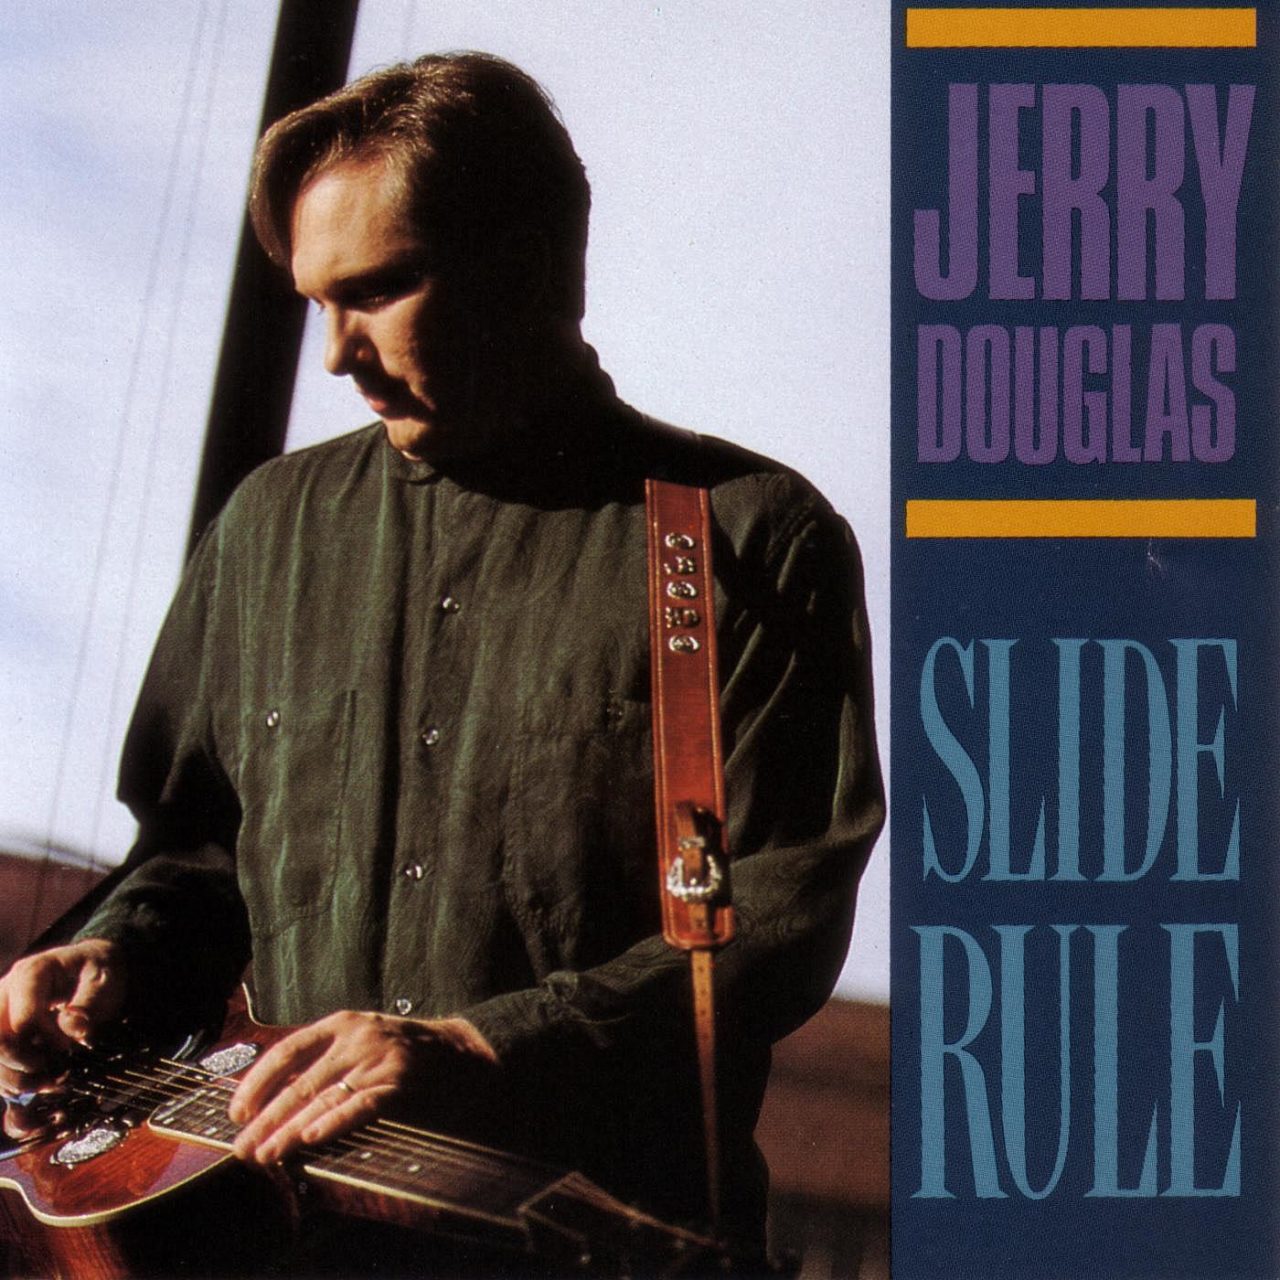 Jerry Douglas – Slide Rule cover album